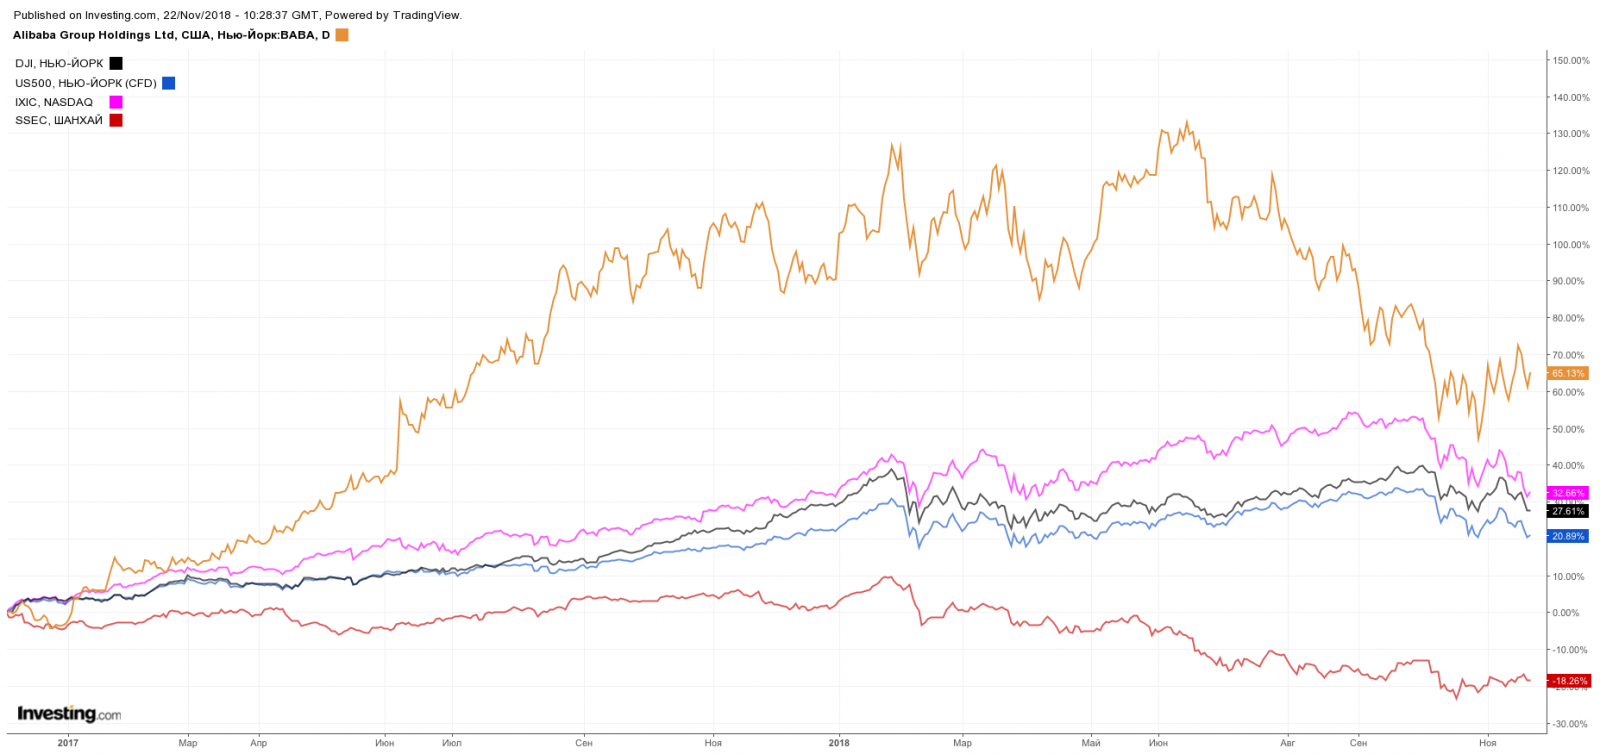 Сравнение динамики цены акций Alibaba Group с индексами: Dow Jones, S&P 500, NASDAQ, Shanghai Composite.